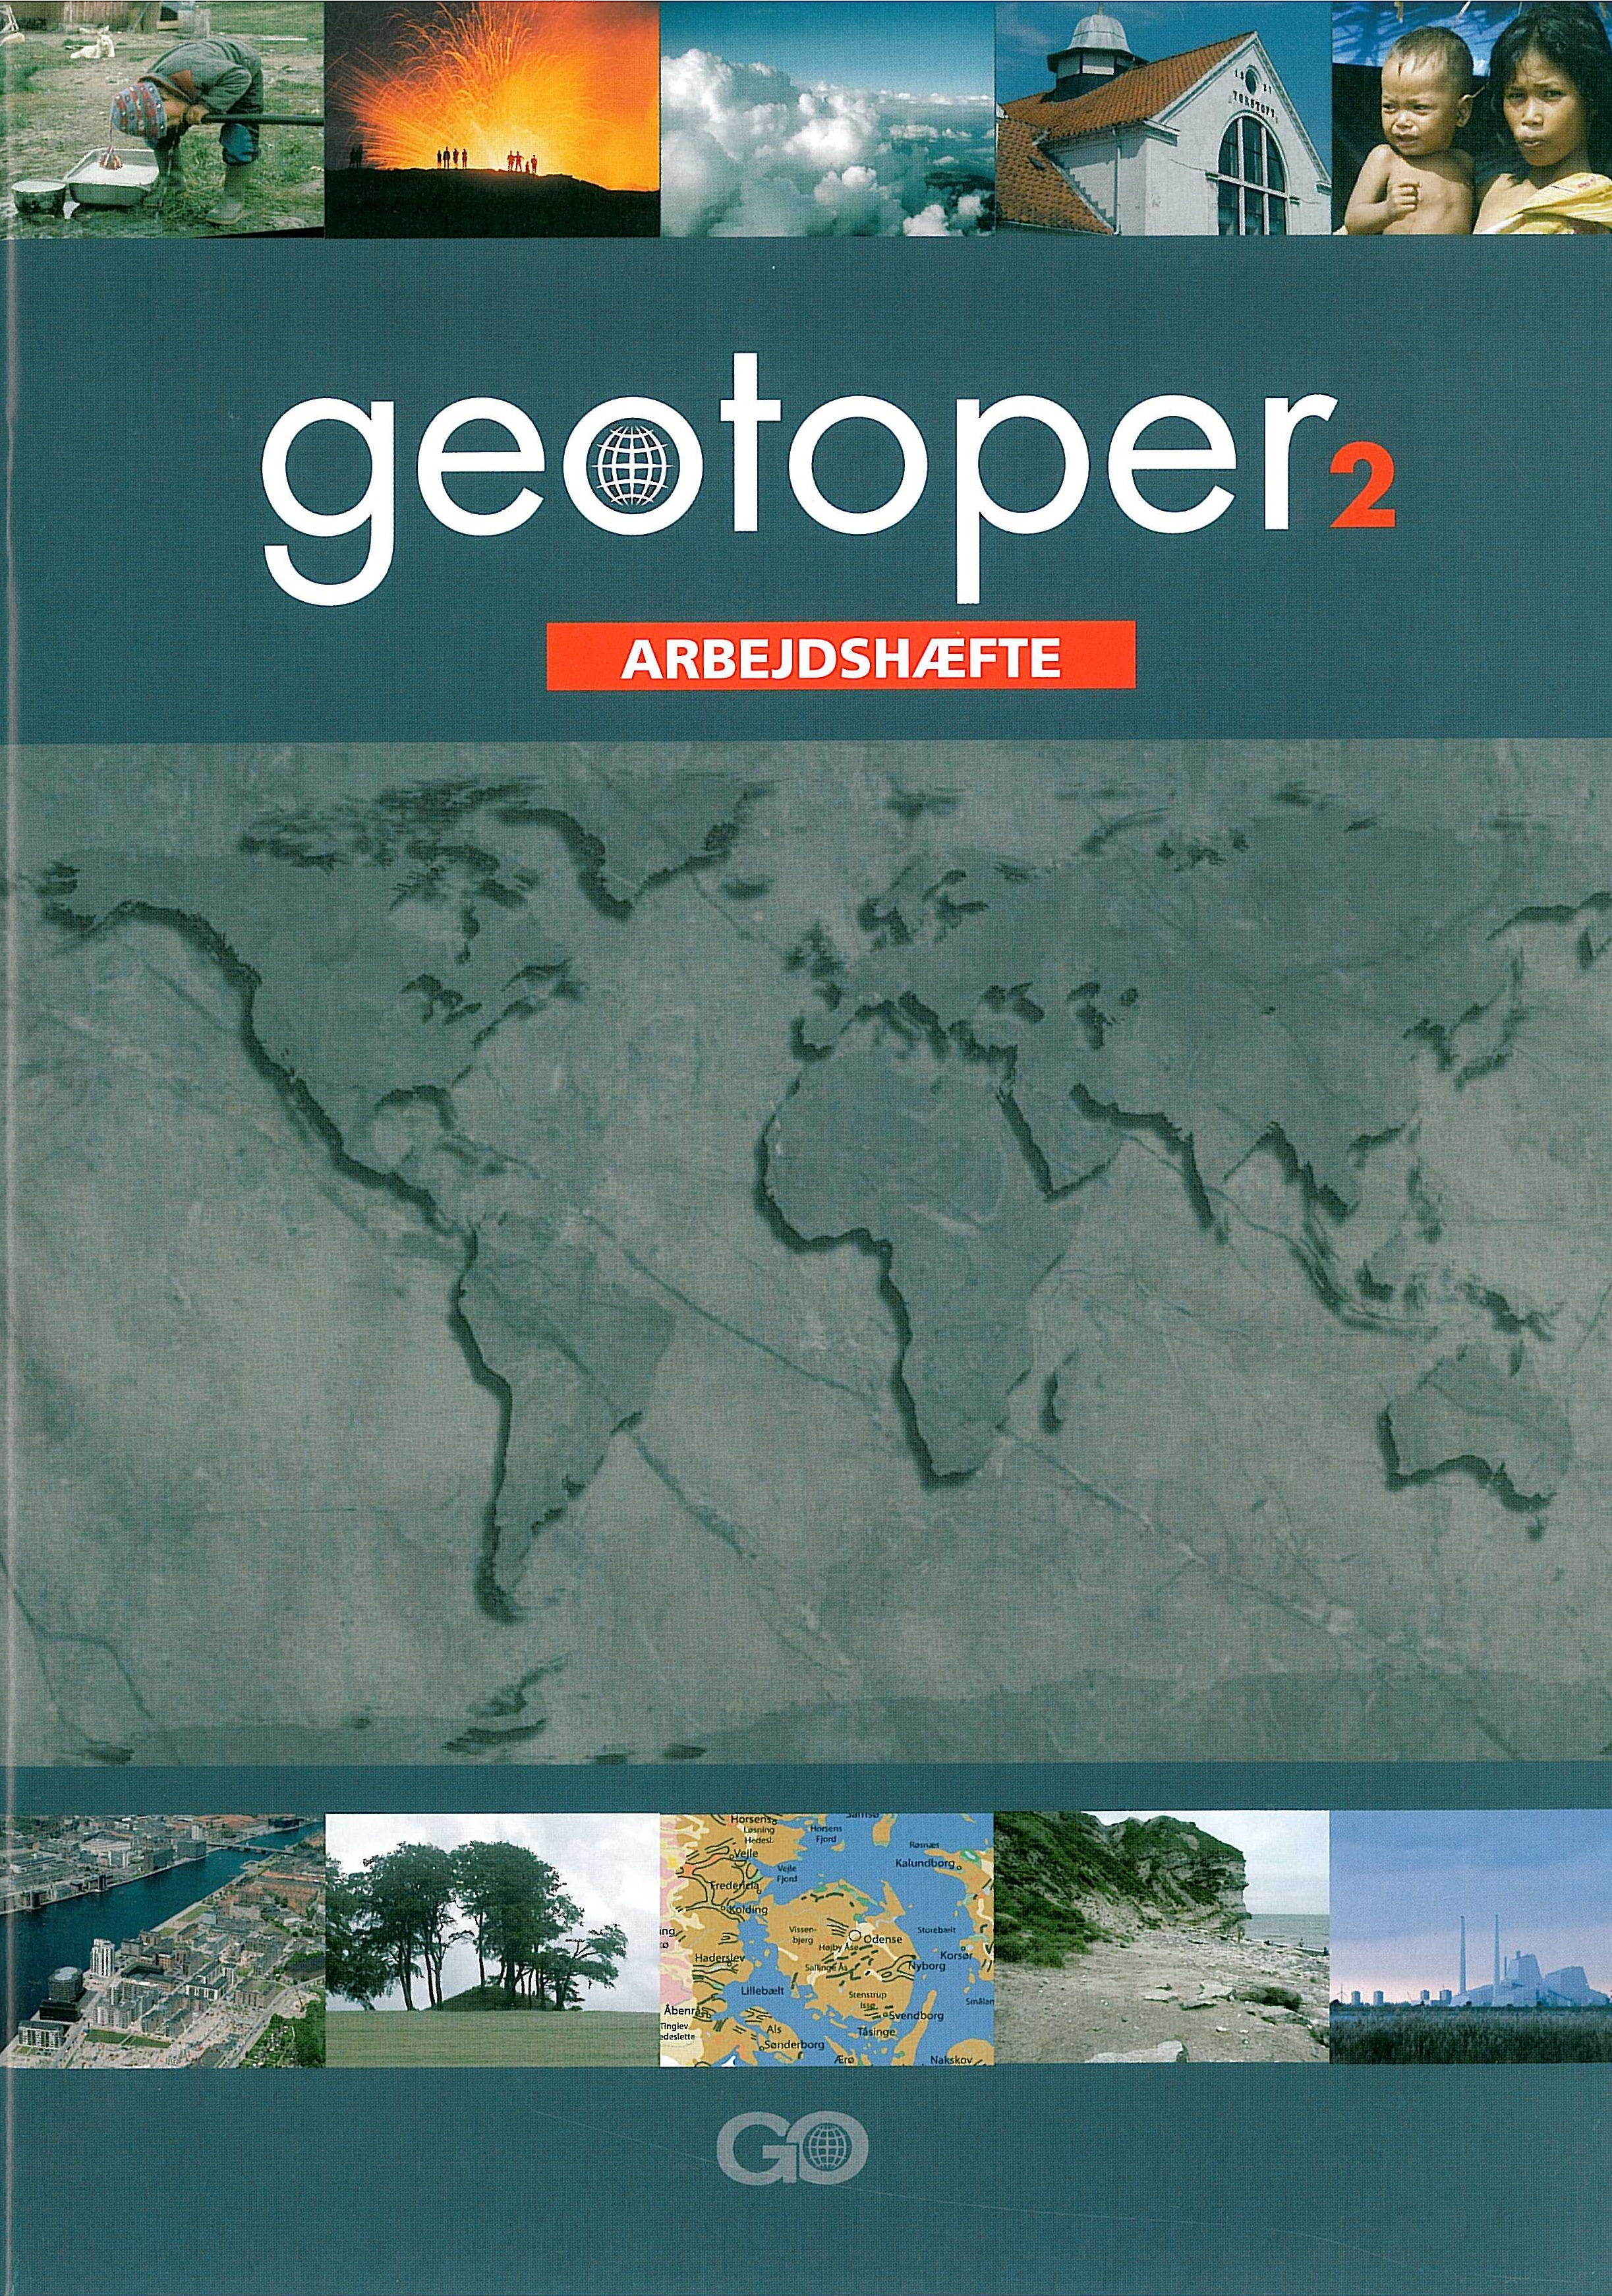 Geotoper 2 Arbejdshæfte er en del af et undervisningssystem til grundskolens undervisning i geografi i 7. til 9. klasse.